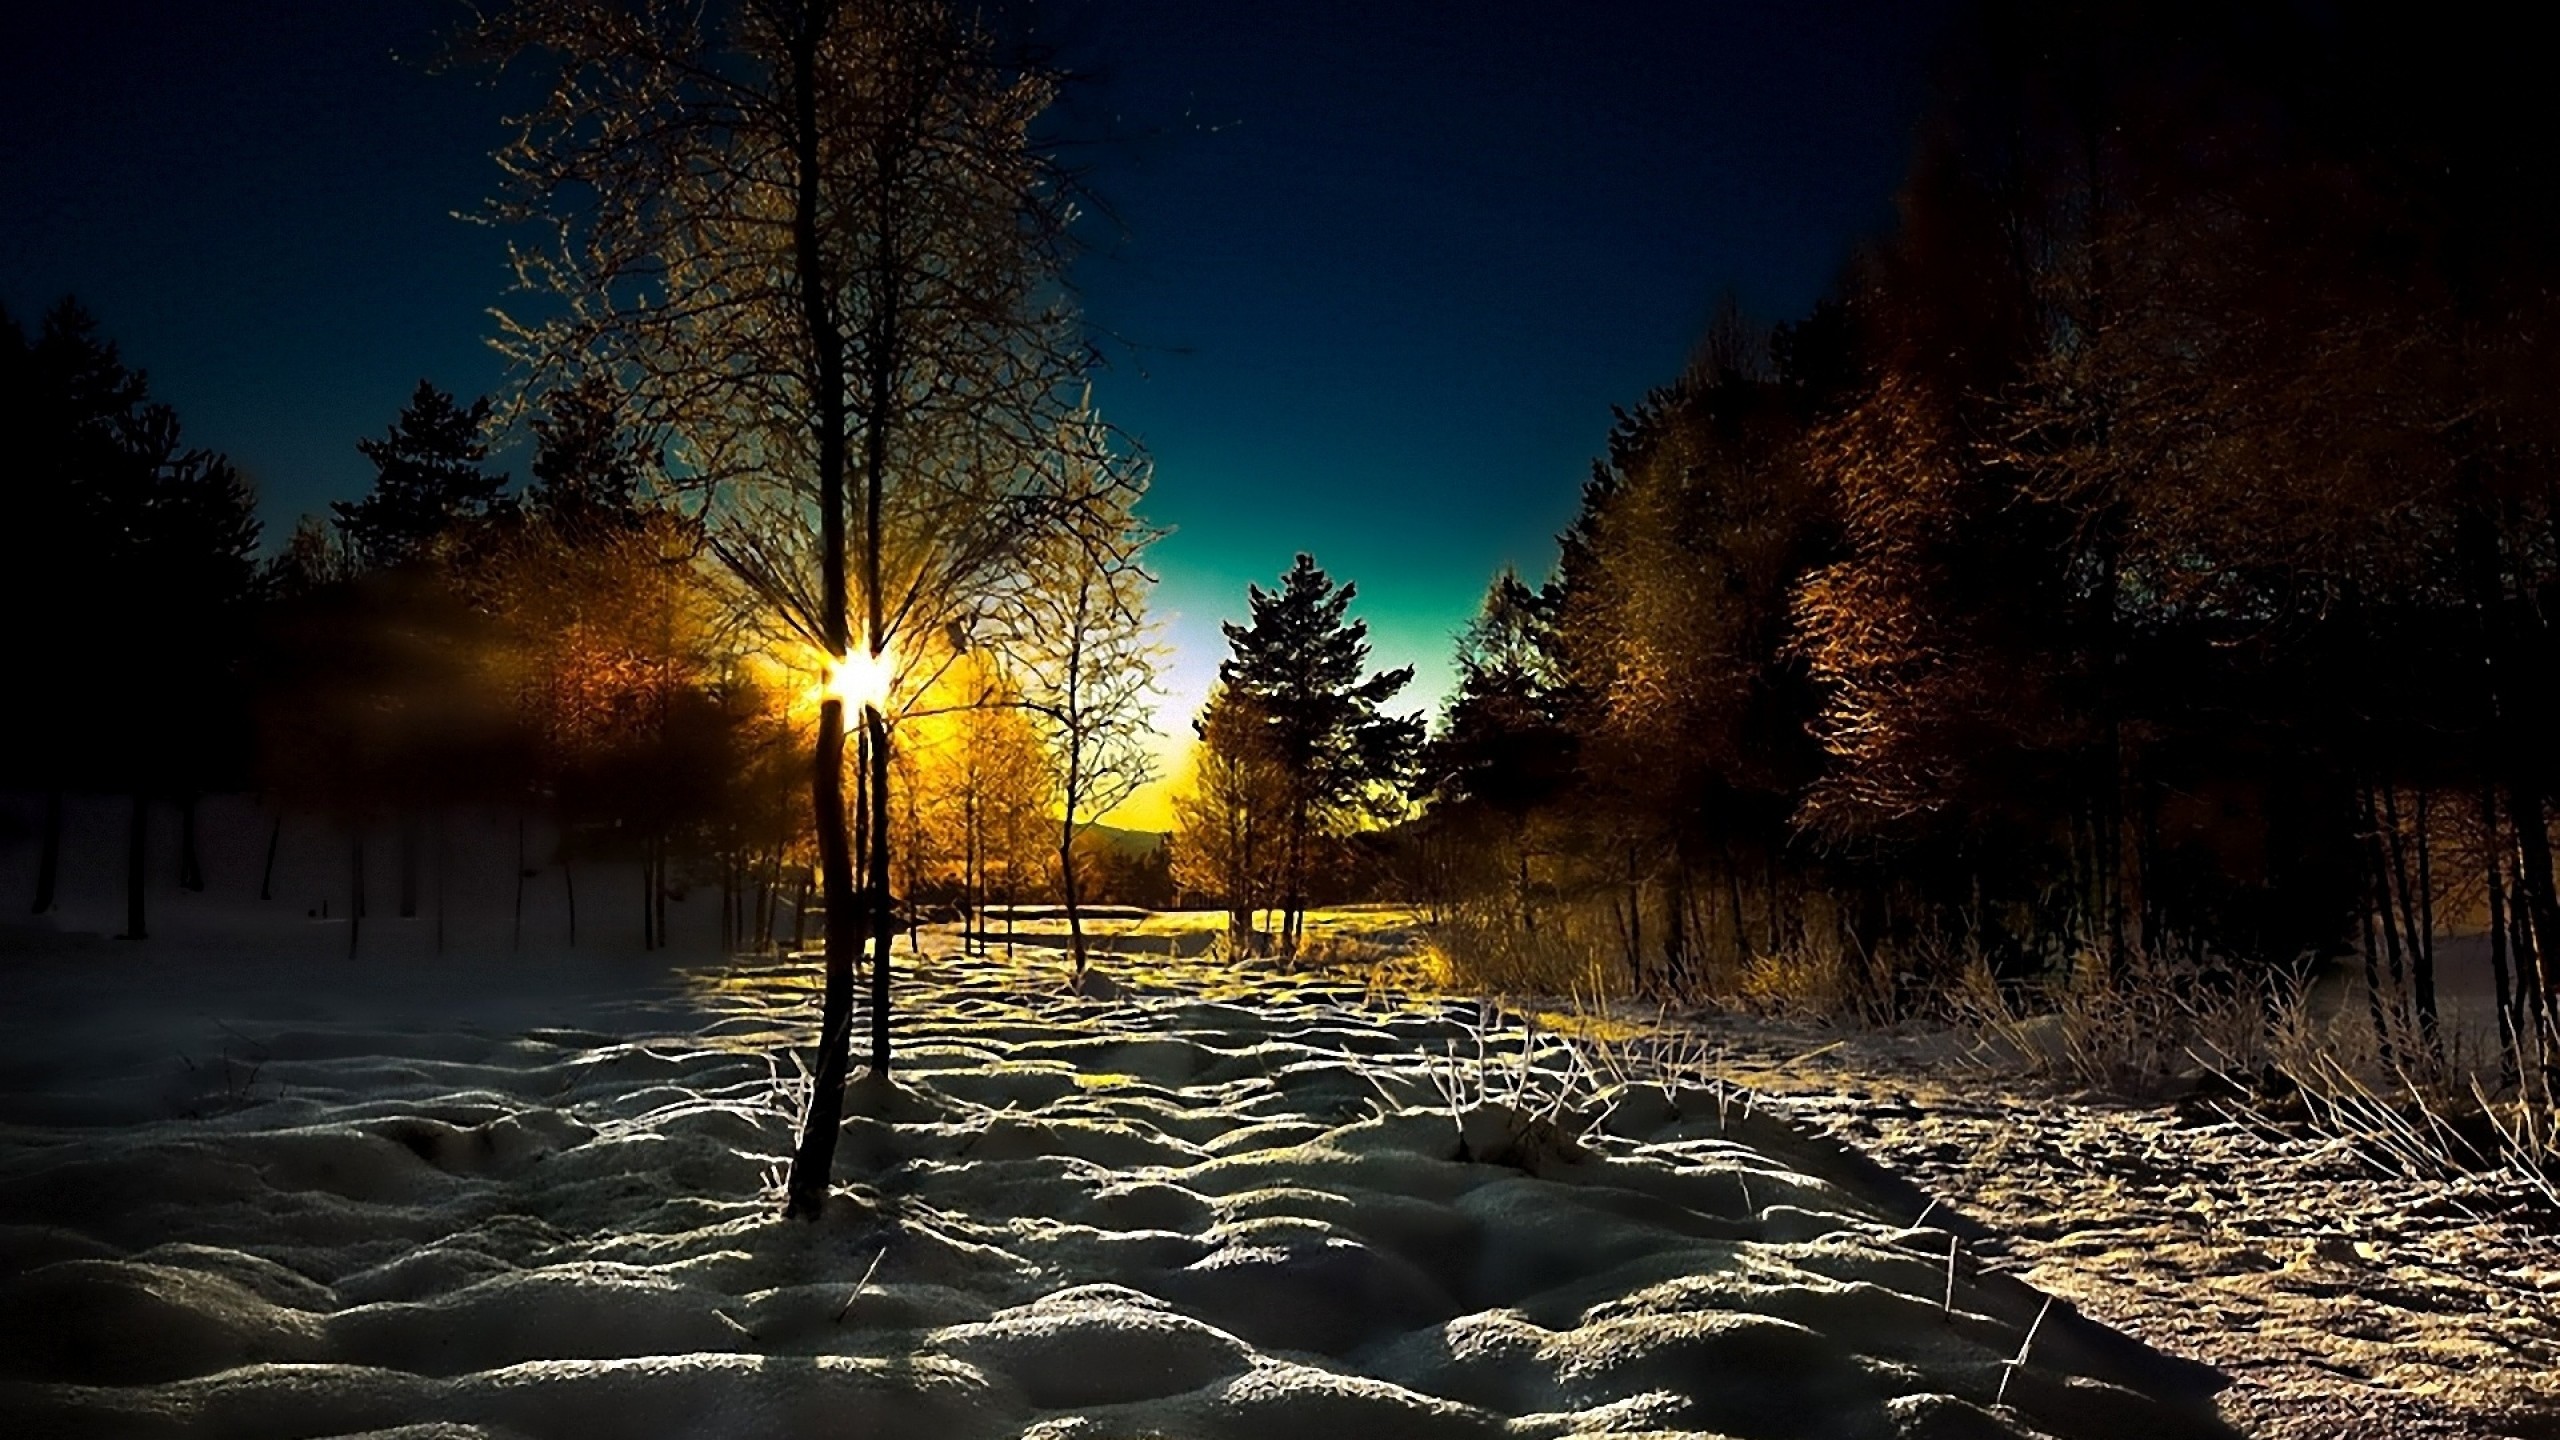 Снег вечером весной. Зима. К вечеру. Зимний ночной пейзаж. Зимний лес вечером.